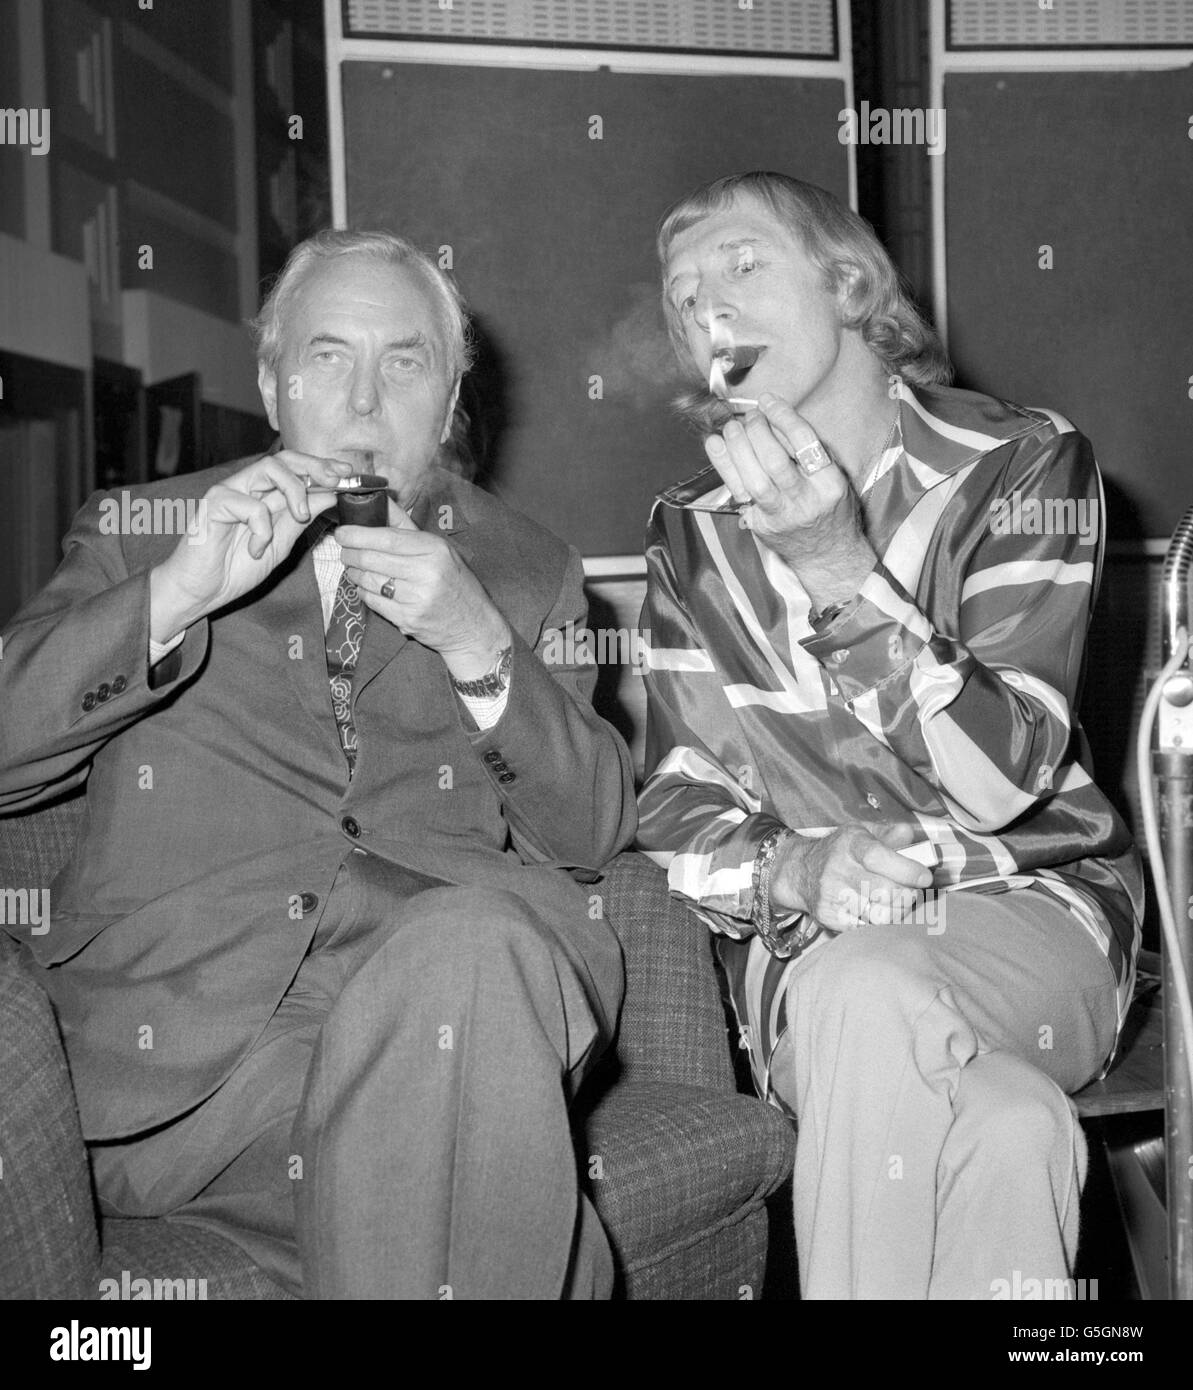 TV- und Radiomoderstar Jimmy Savile genießt eine Zigarre mit Mitrauchter und Sir Harold Wilson während ihres Treffens im Broadcasting House in London. Herr Savile interviewte den ehemaligen Premierminister bei einer Aufnahmesitzung für sein Radio-1-Programm Speakeasy. Stockfoto